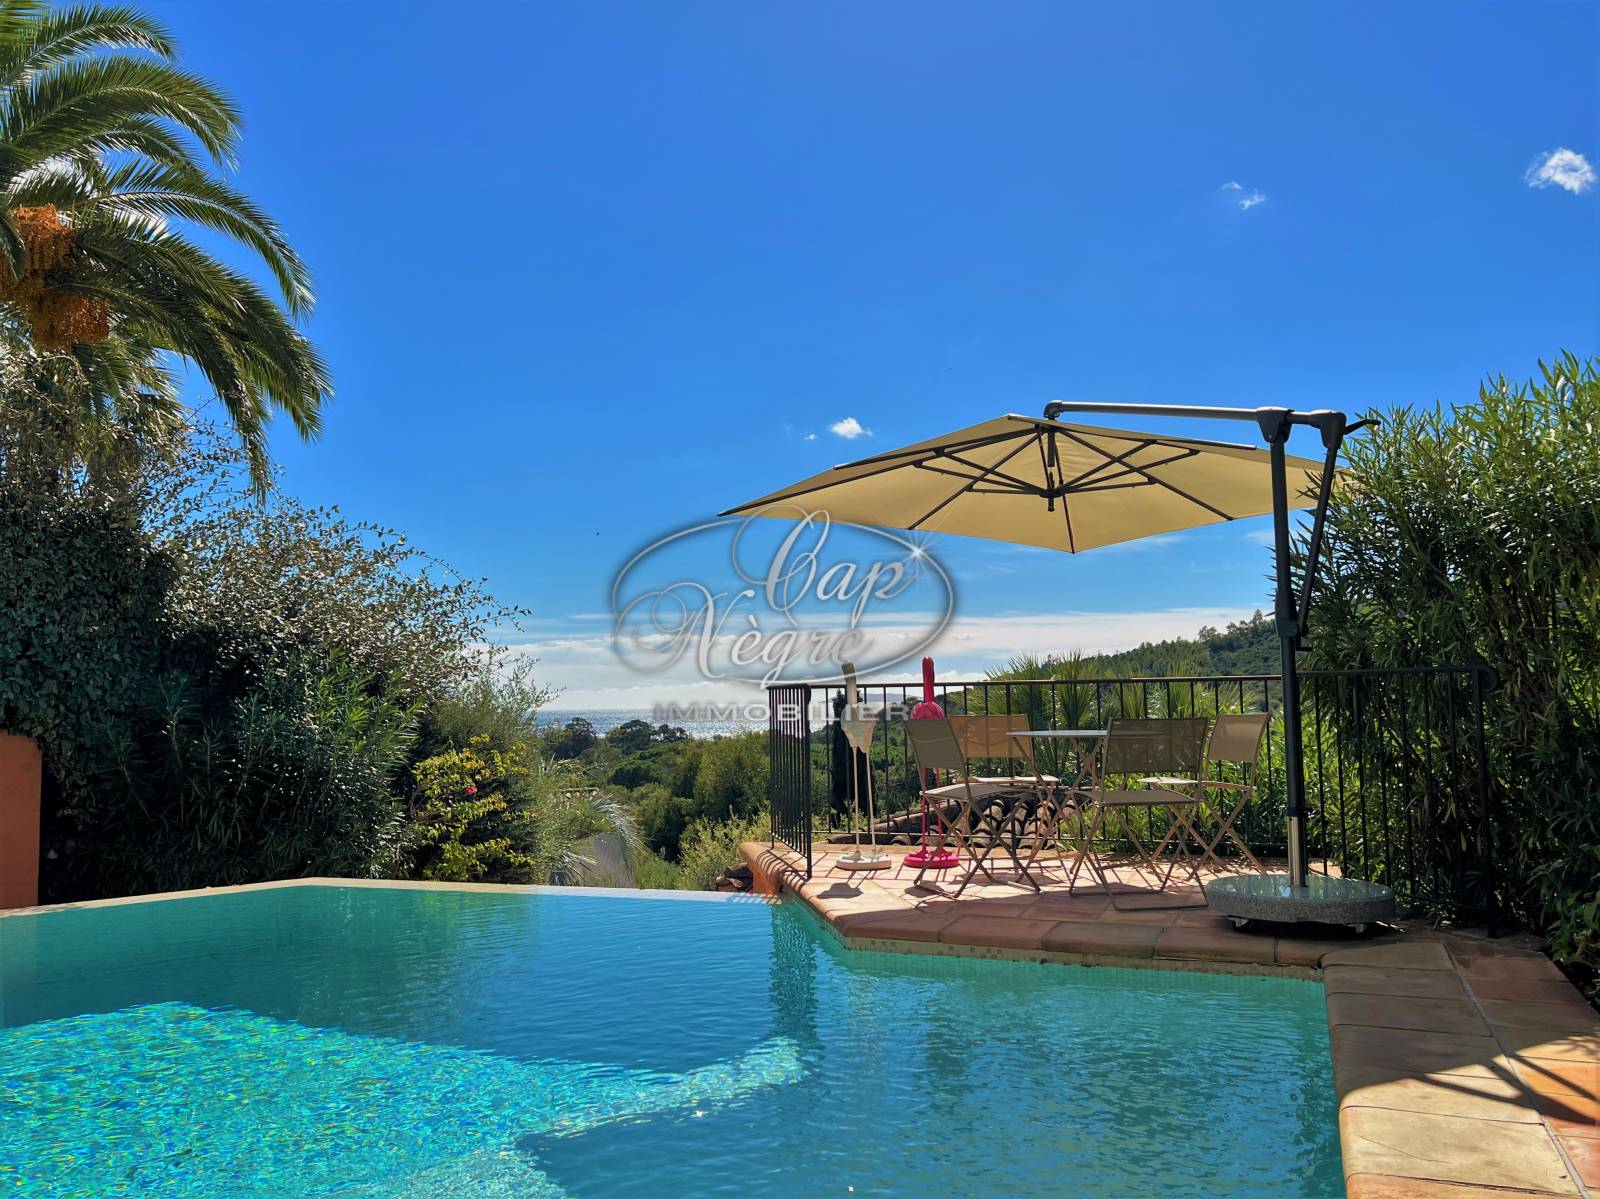 Maison avec piscine pour 8 personnes climatisée avec vue mer à Cavalière en location saisonnière - Cap Nègre Immobilier